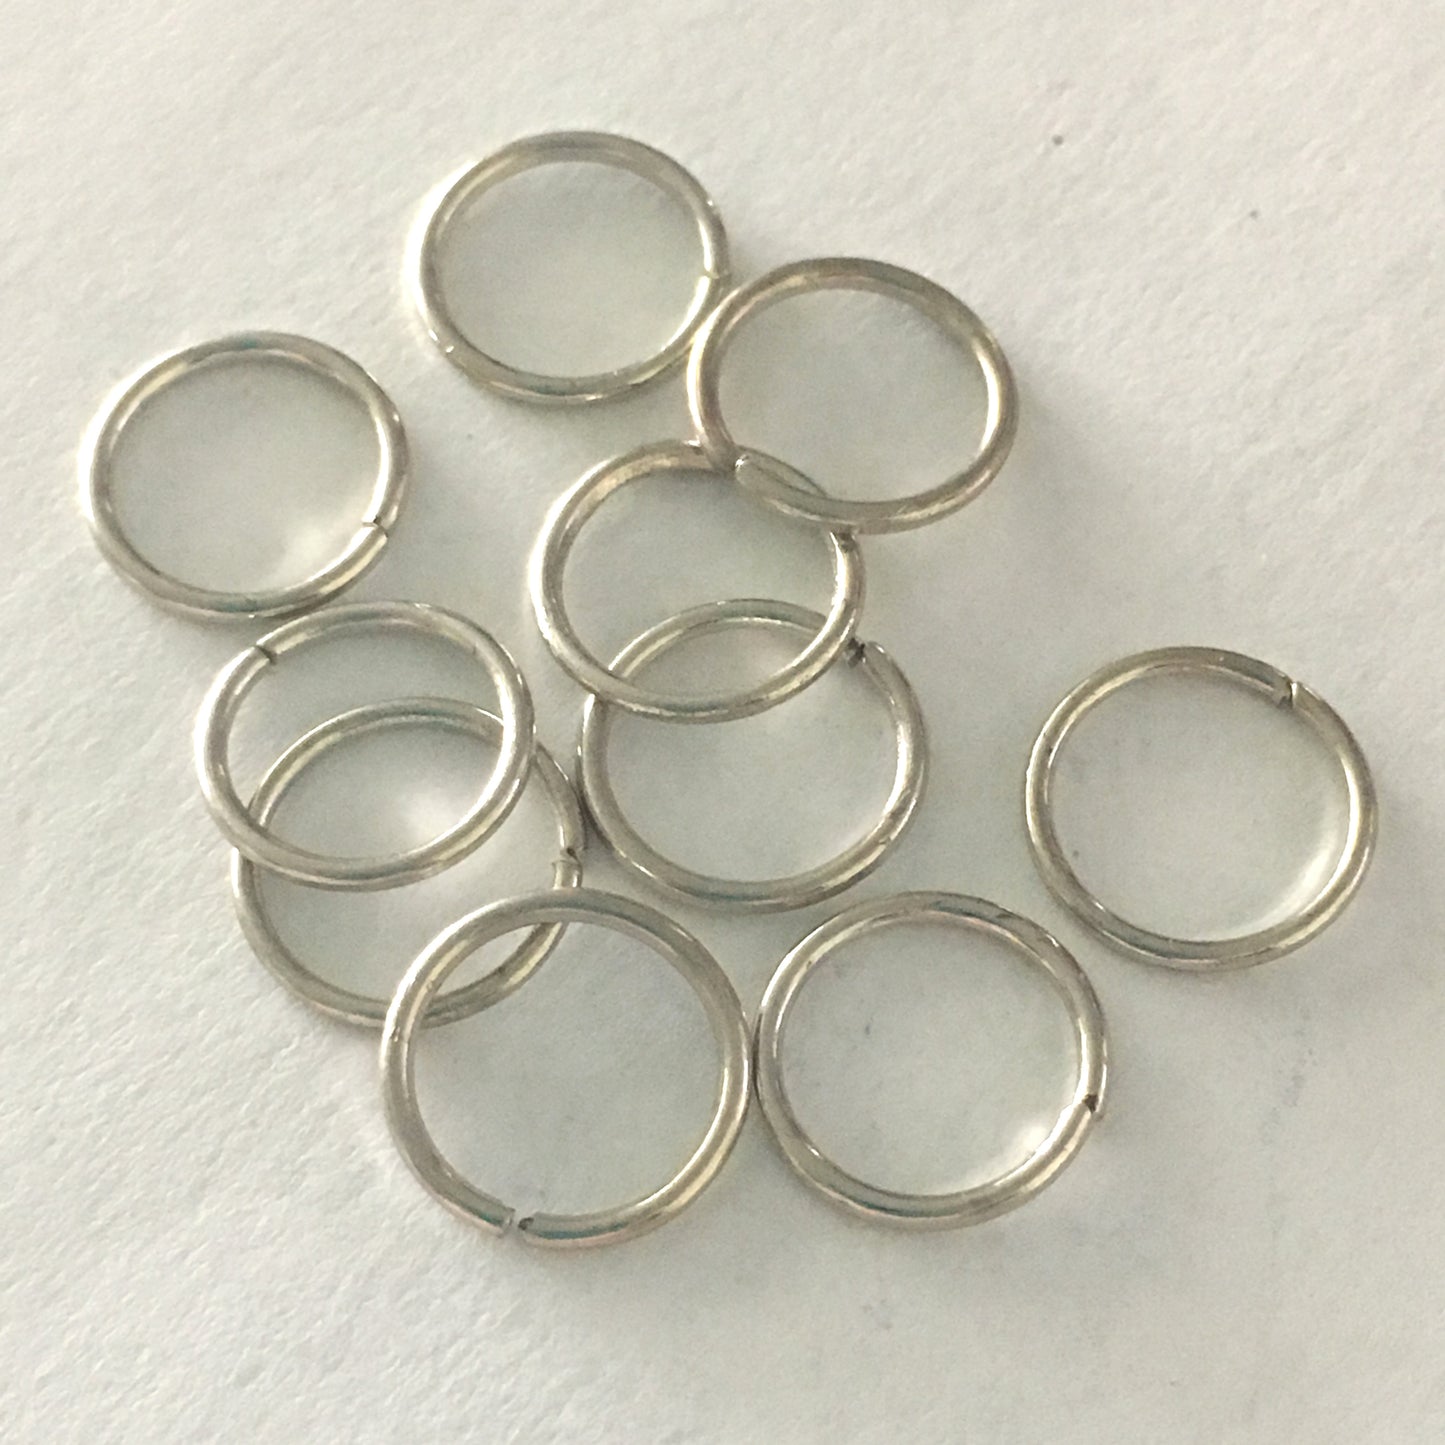 10 mm 18-Gauge Stainless Steel Unsoldered 1 mm Split Jump Rings - 10 Rings